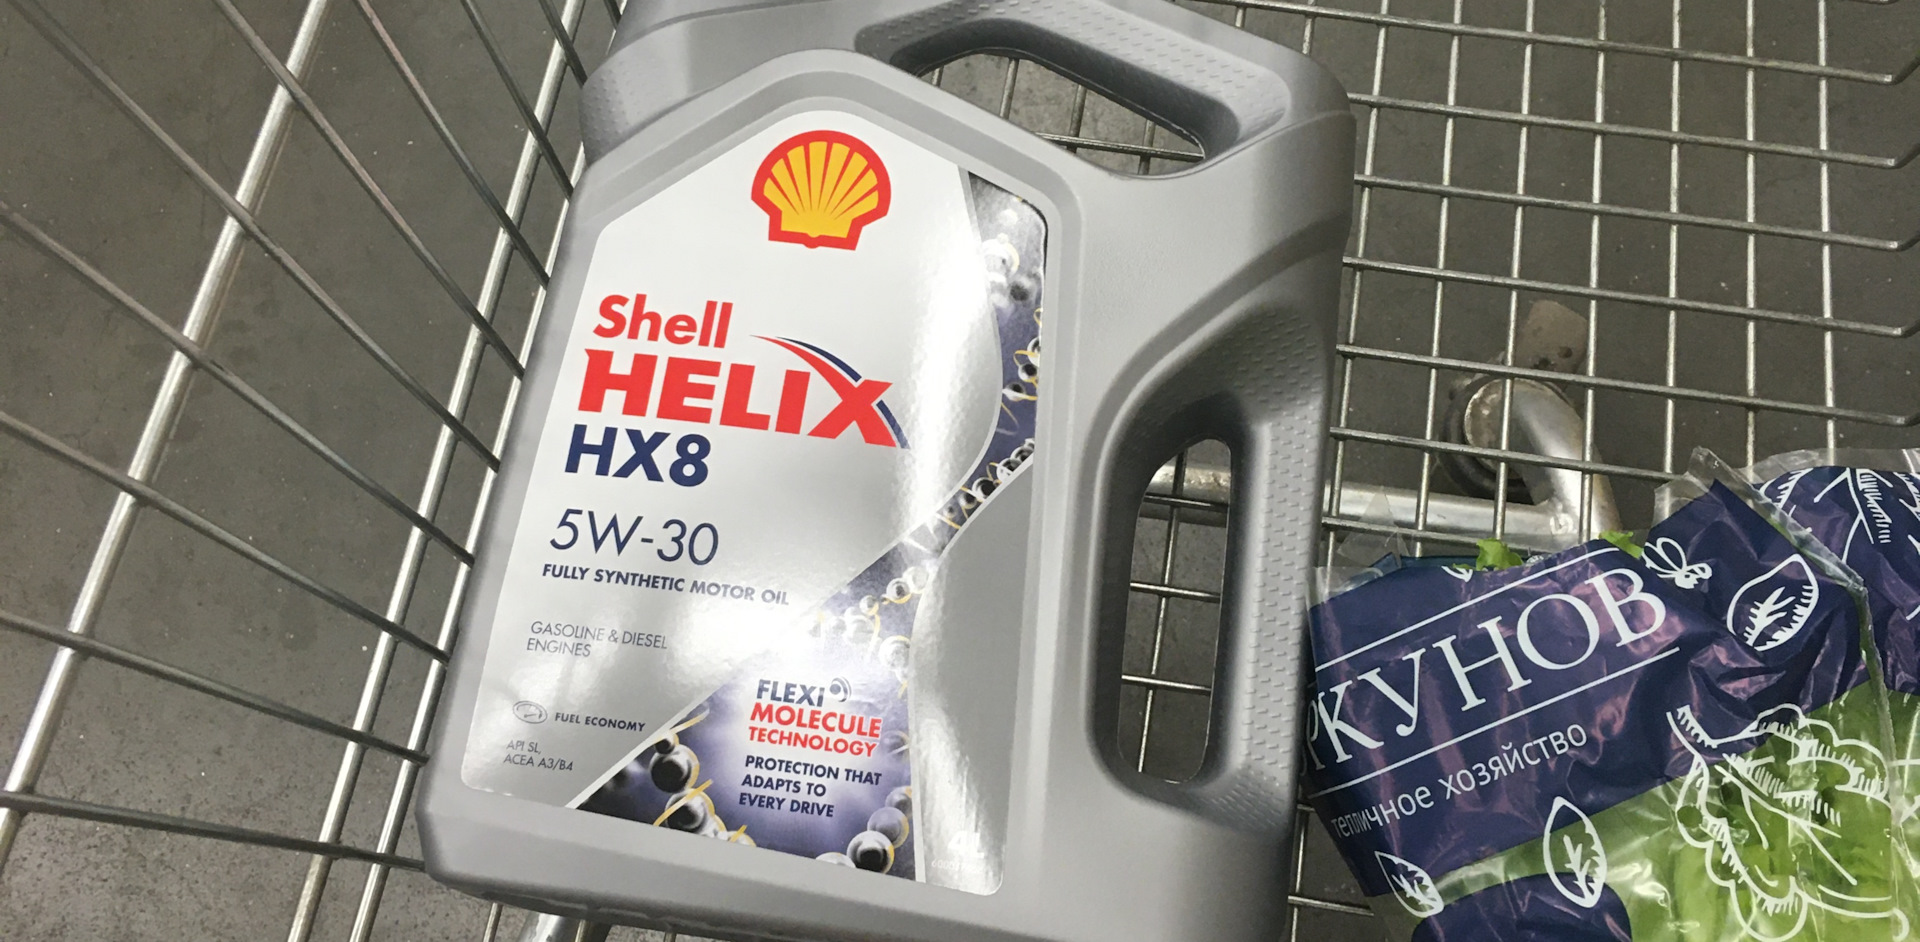 Шелл хеликс подлинность. Производство масло Shell нx8.